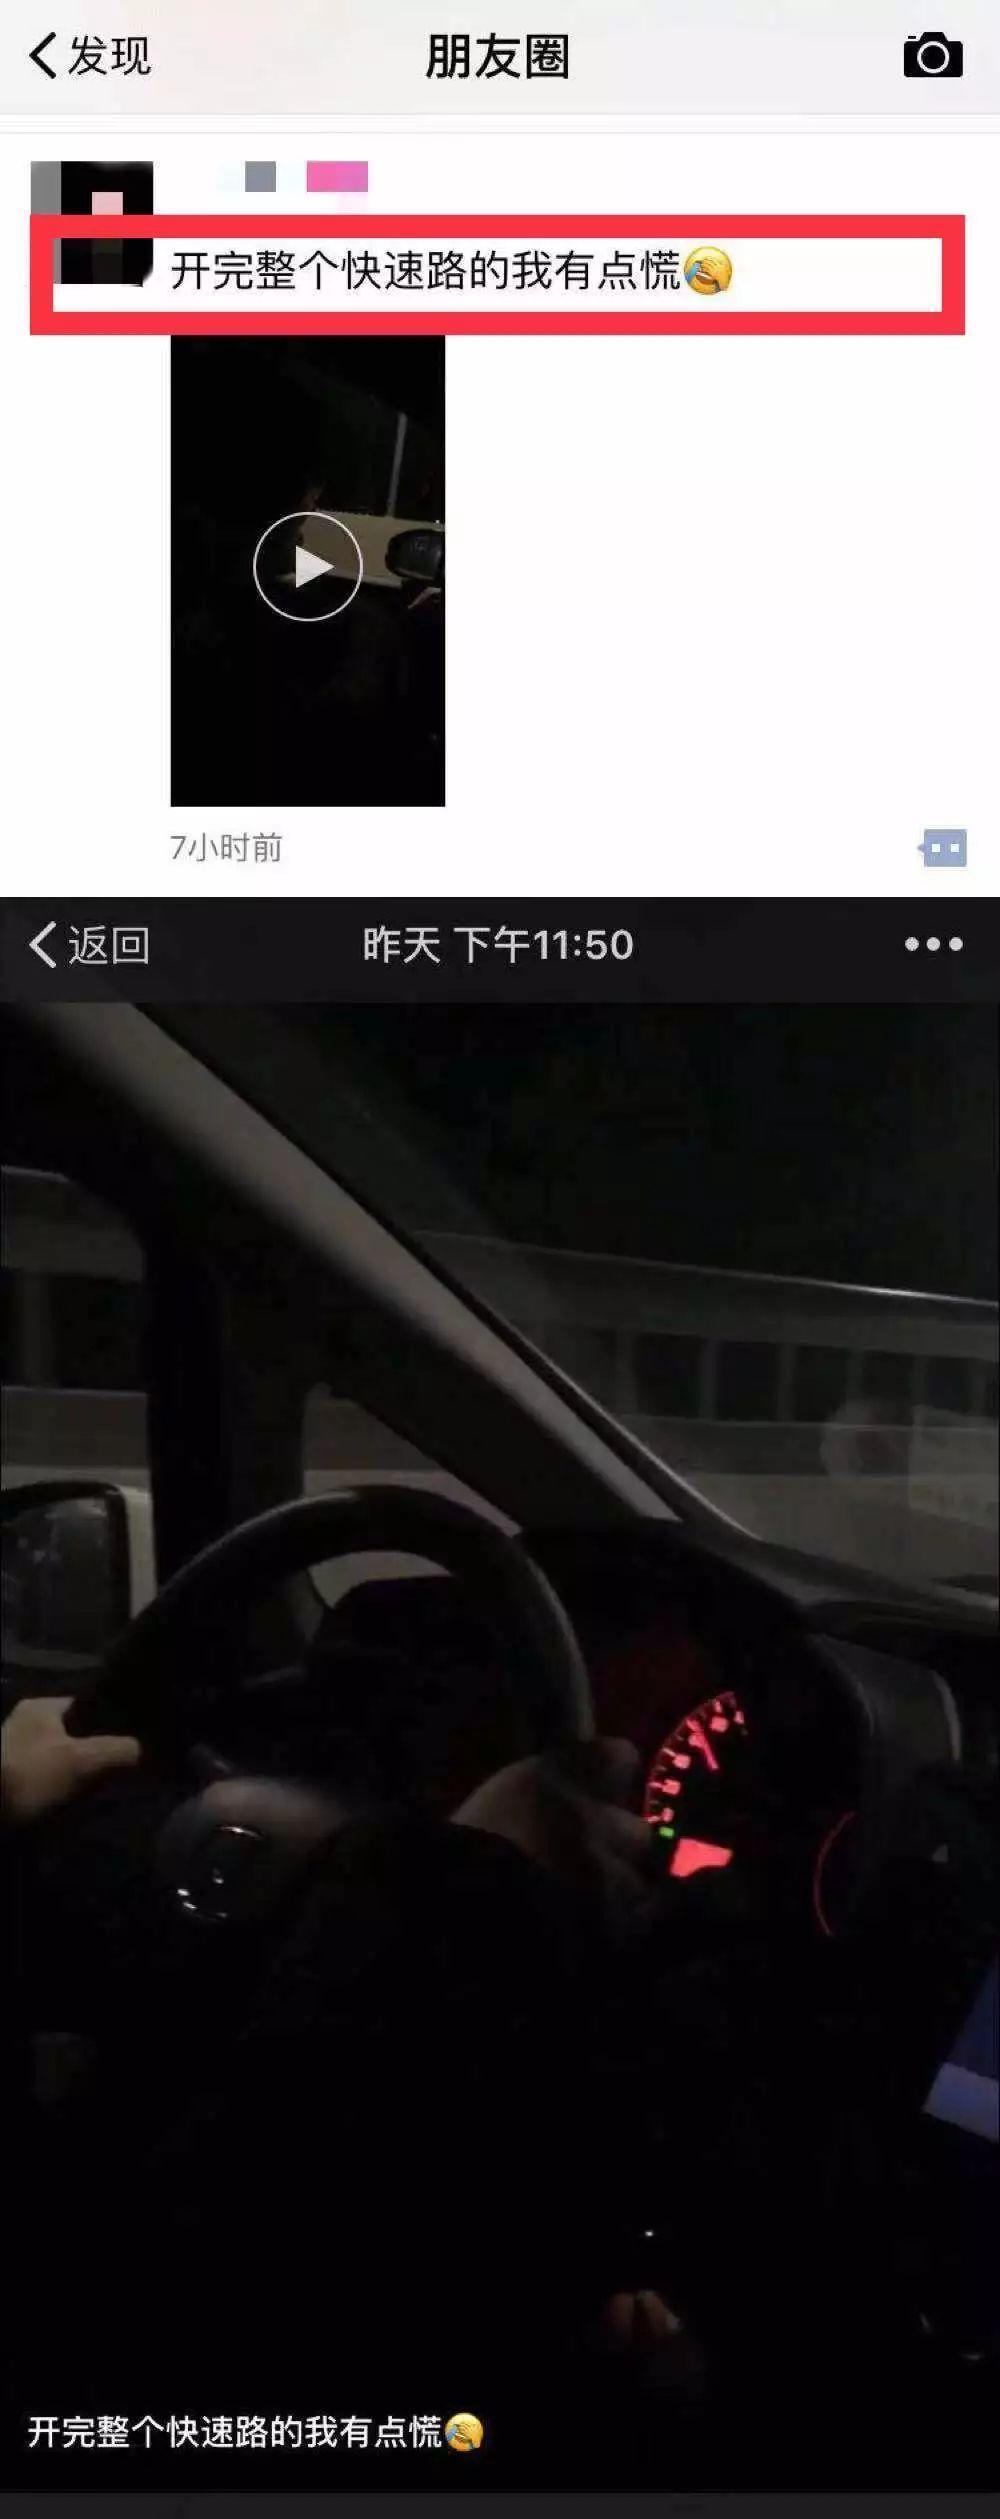 深夜,年轻女孩开车拍视频发了个朋友圈,结果被拘留了!